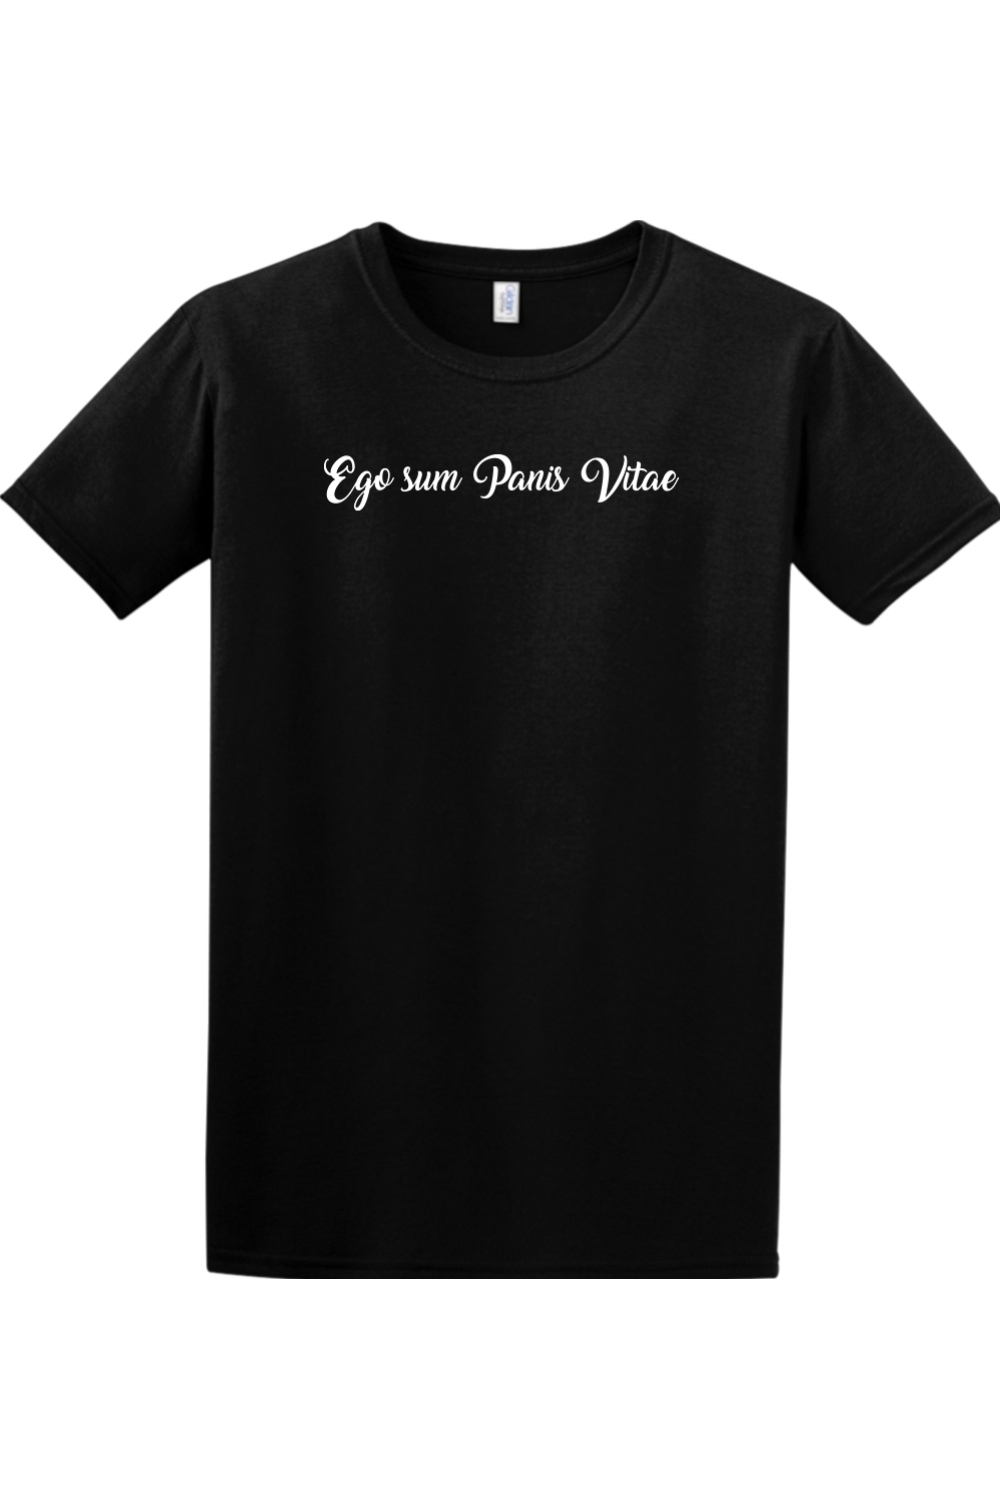 Ego Sum Panis Vitae T-shirt - script